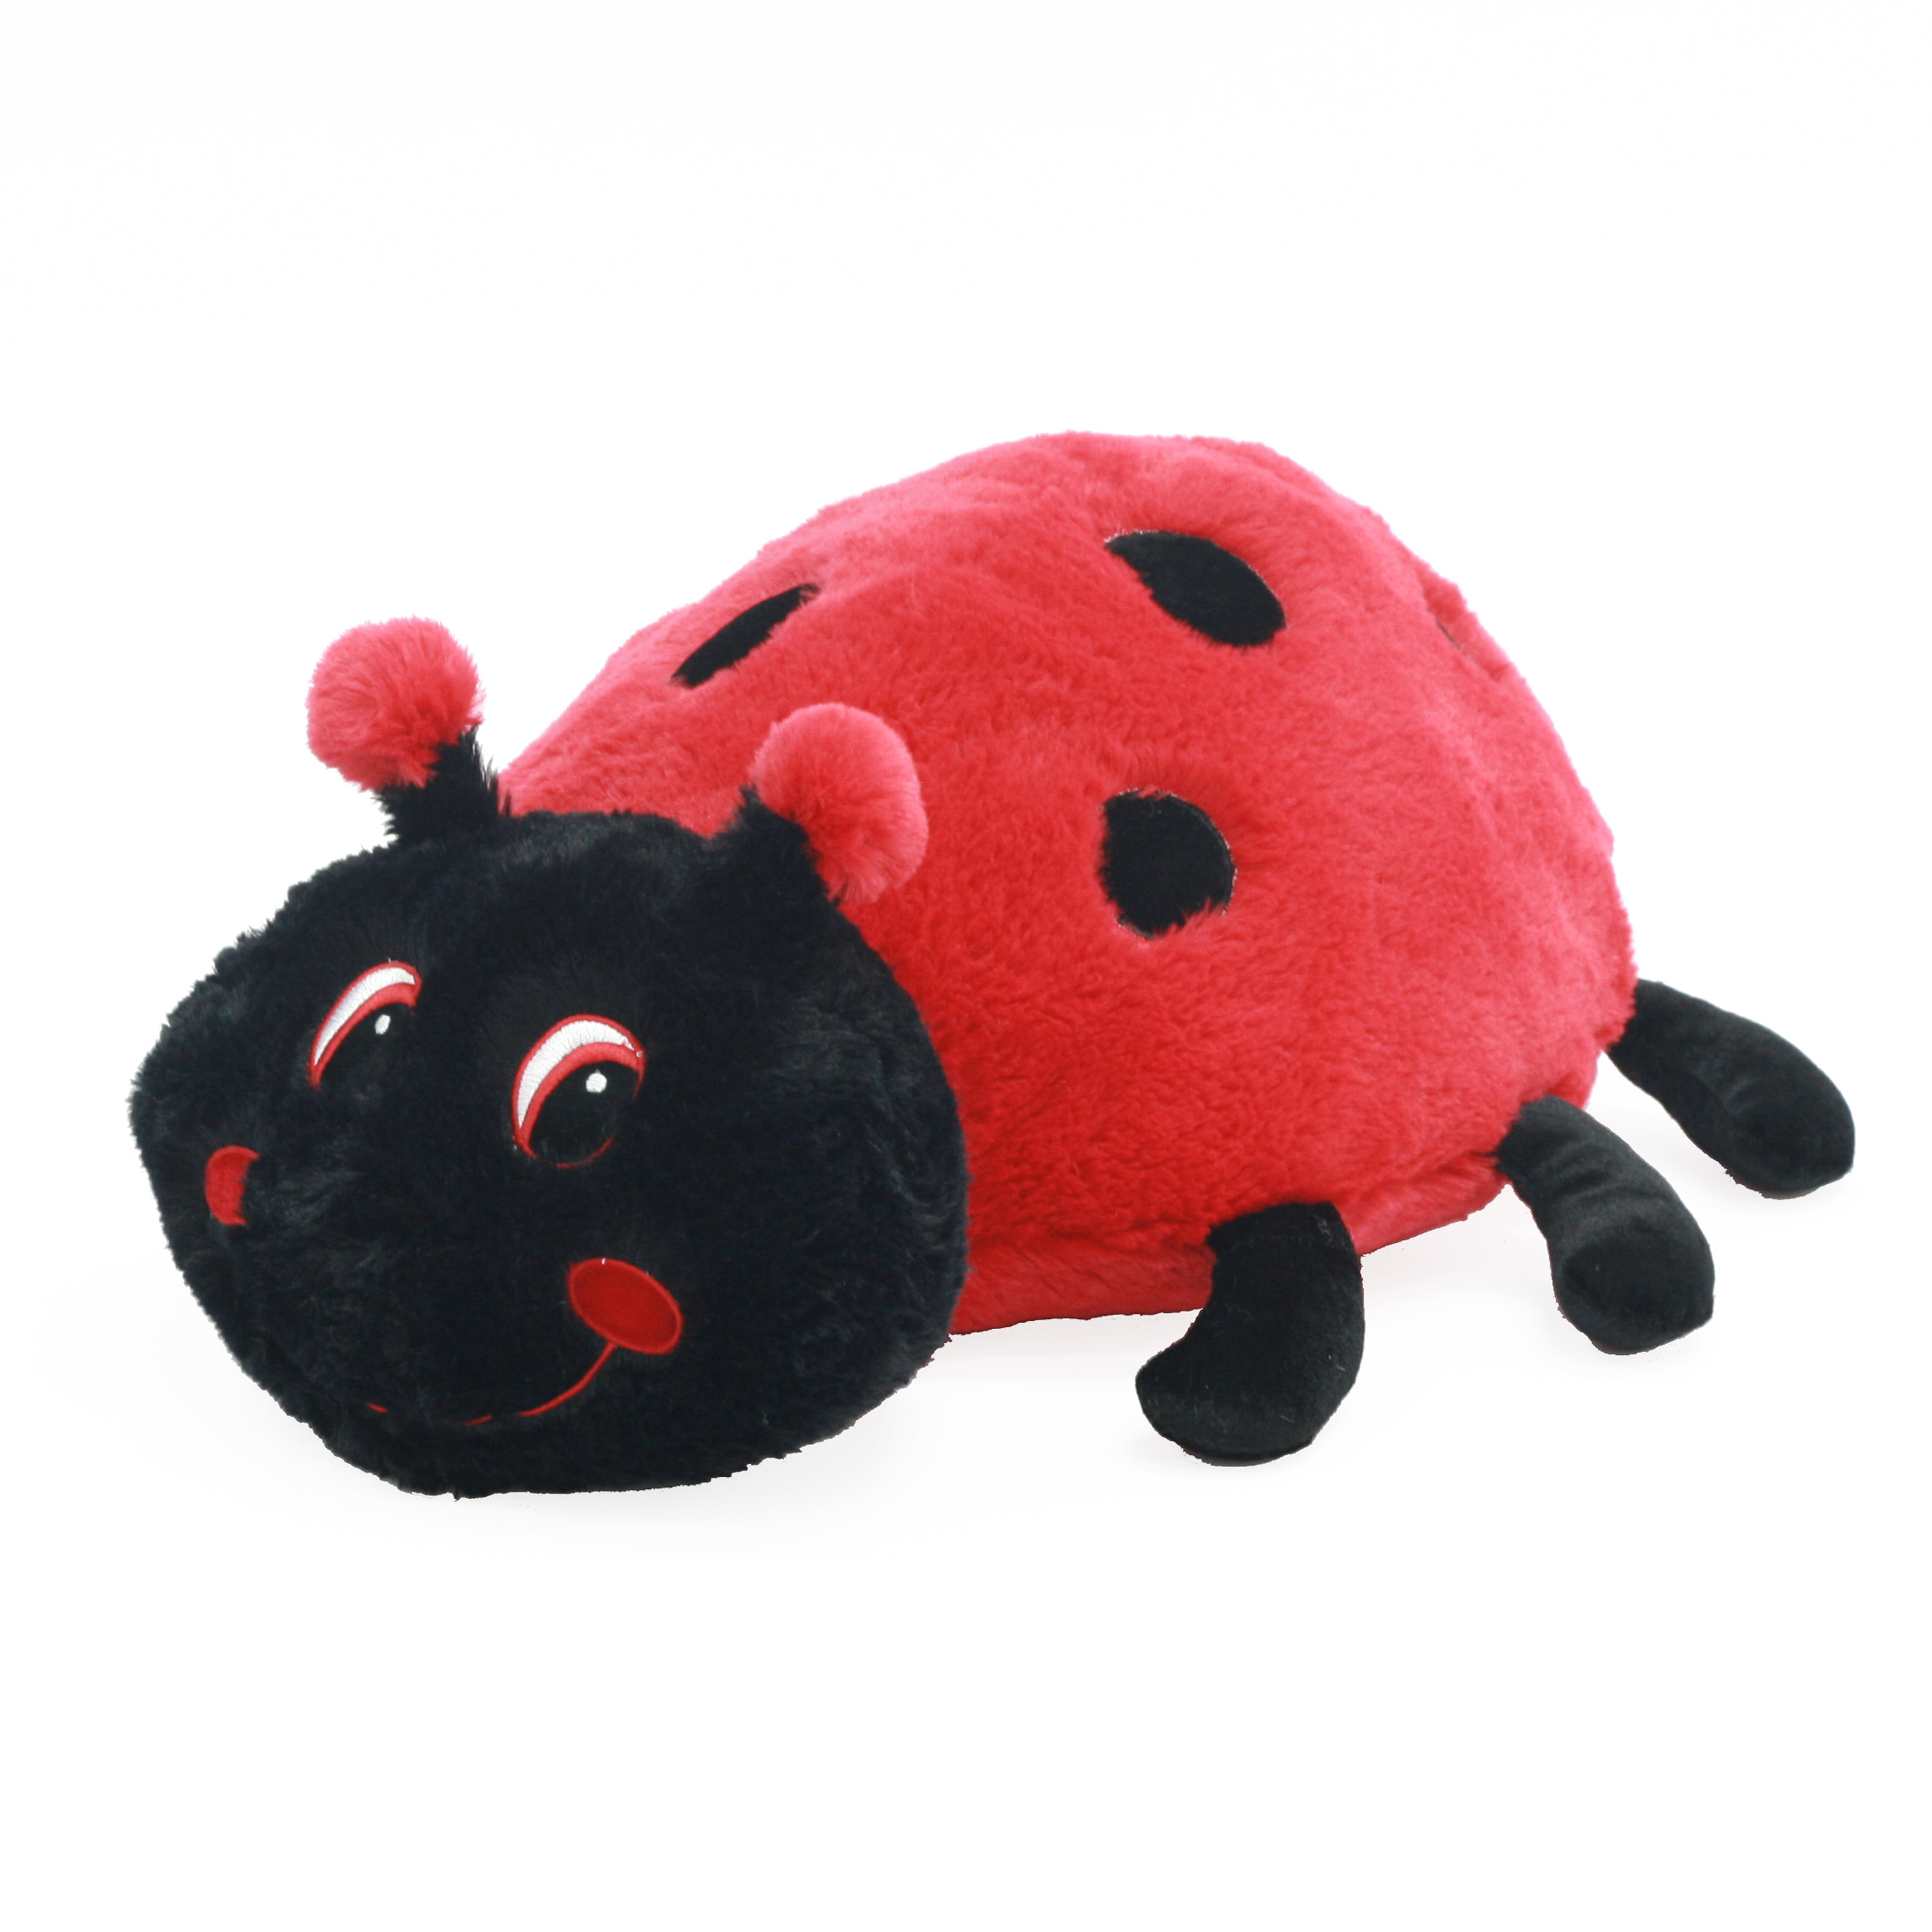 ladybug stuffed animal